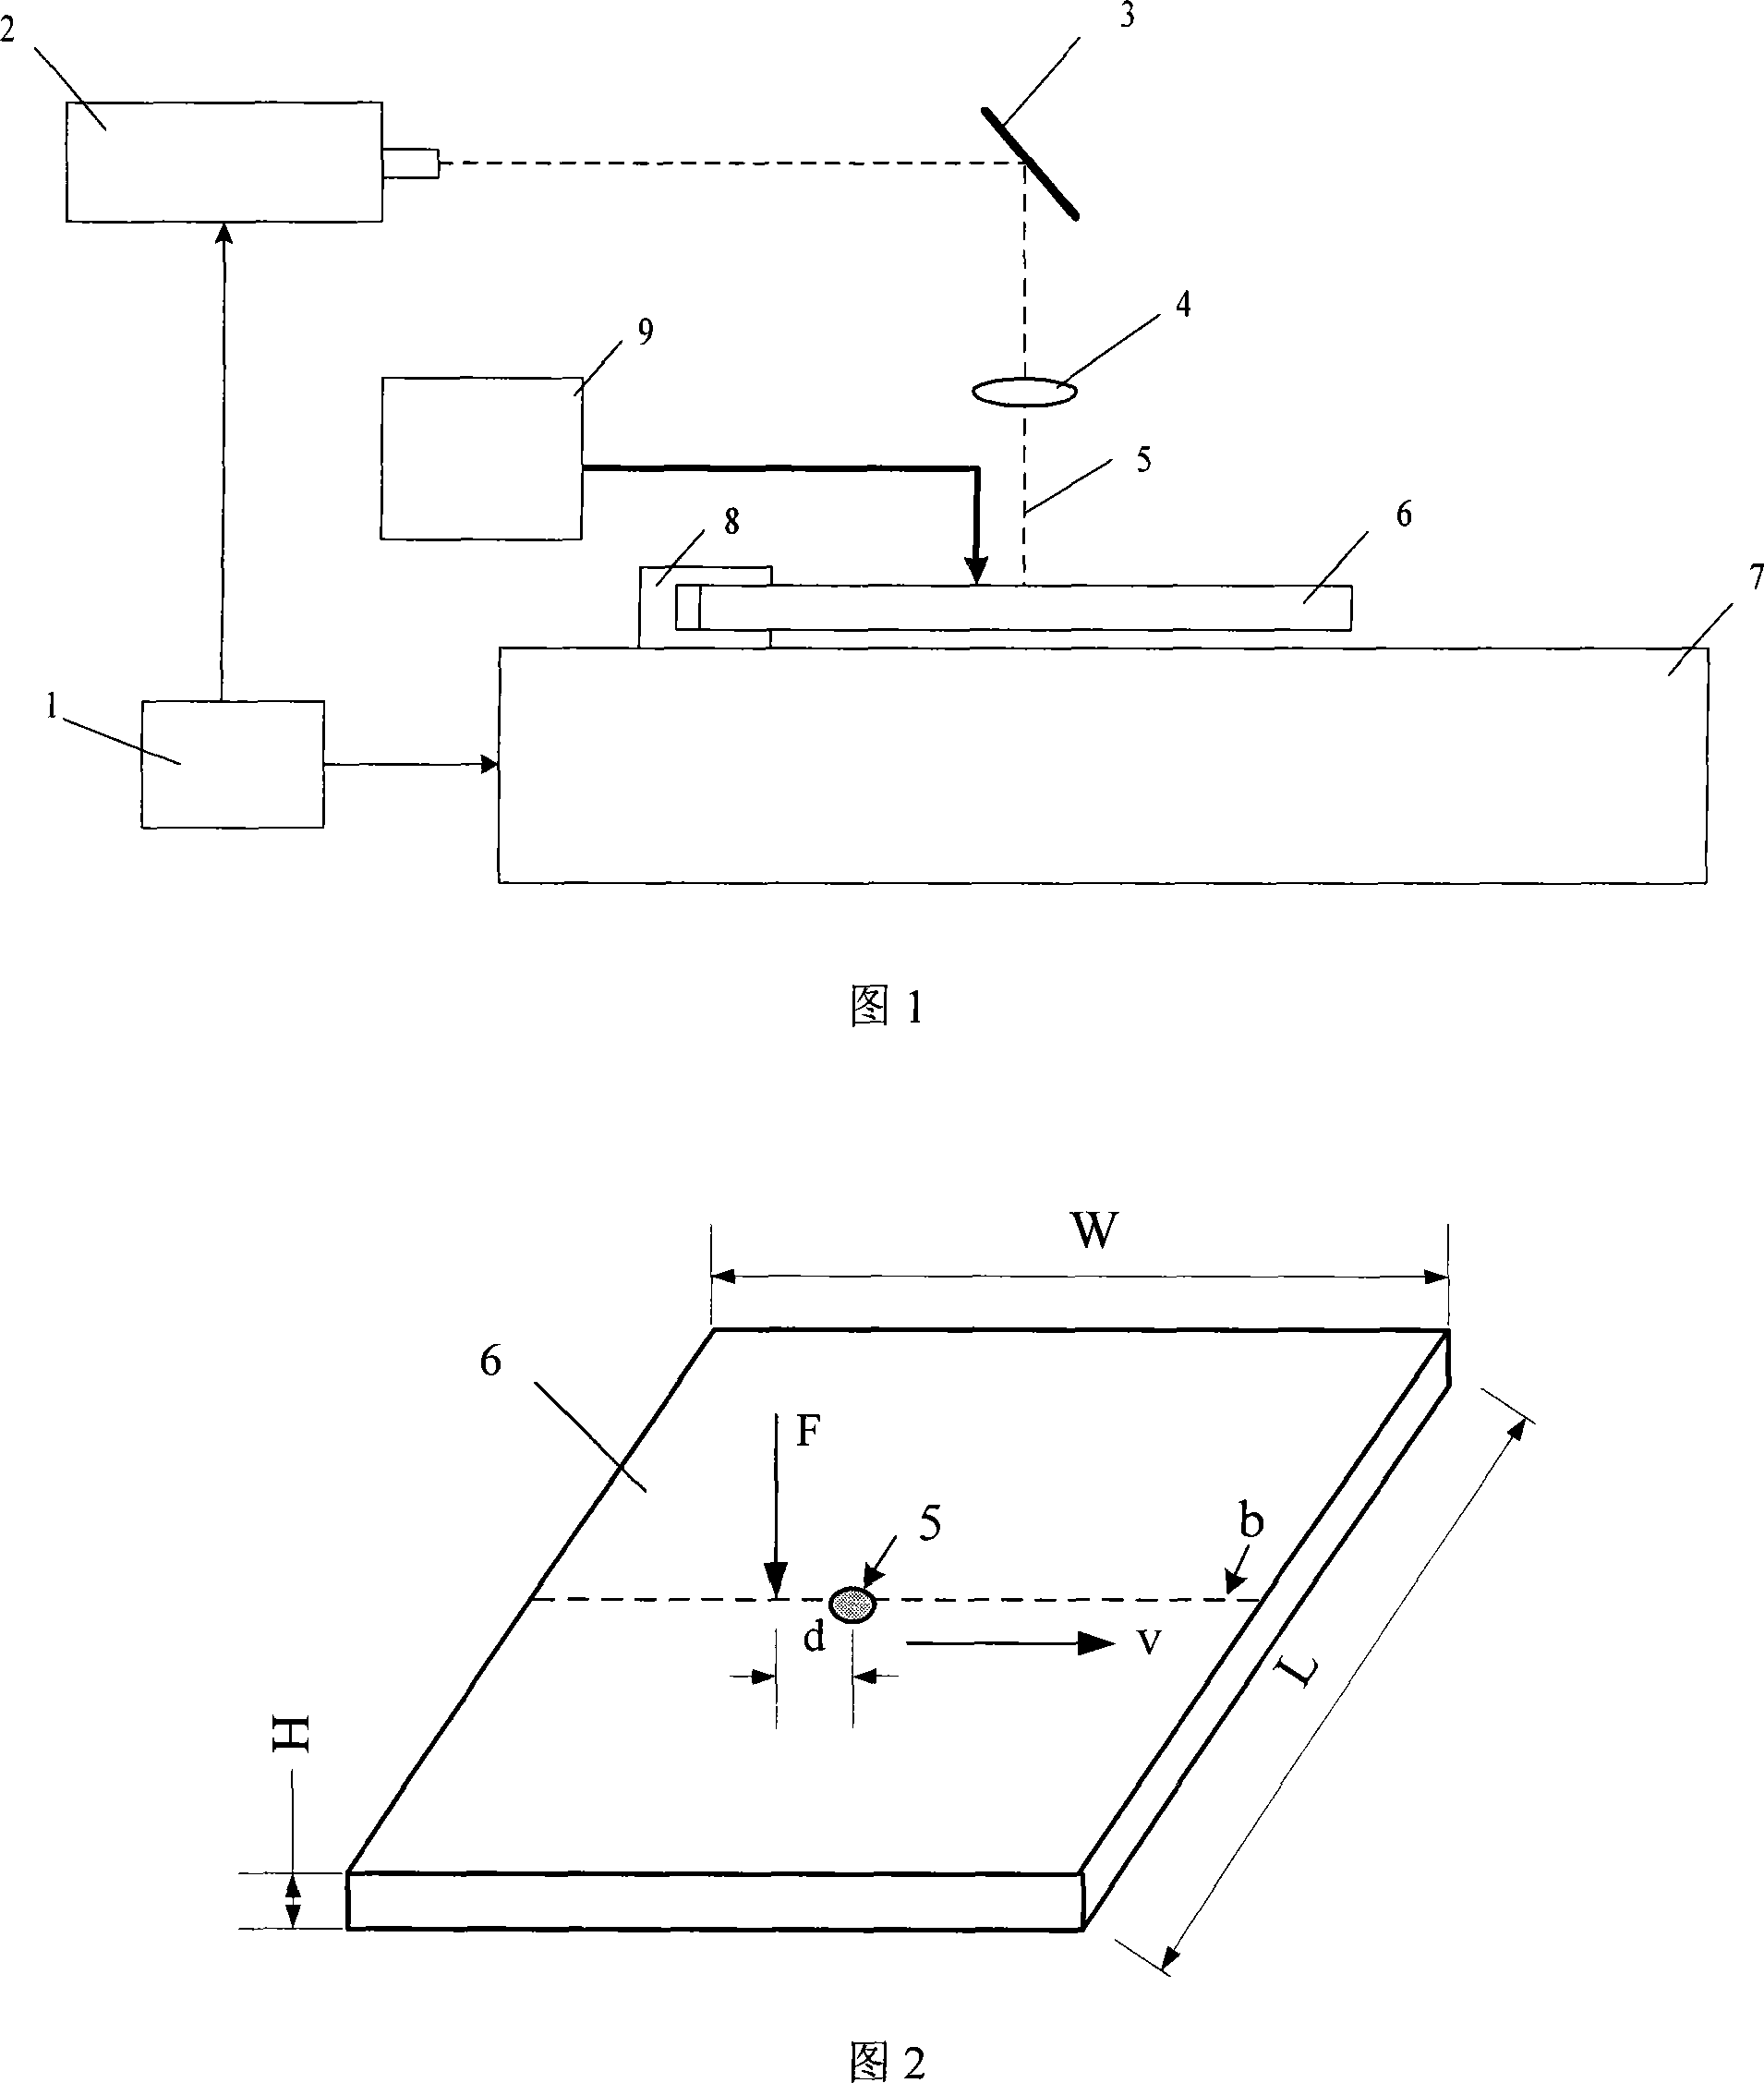 Heat conjunction metal board laser forming method